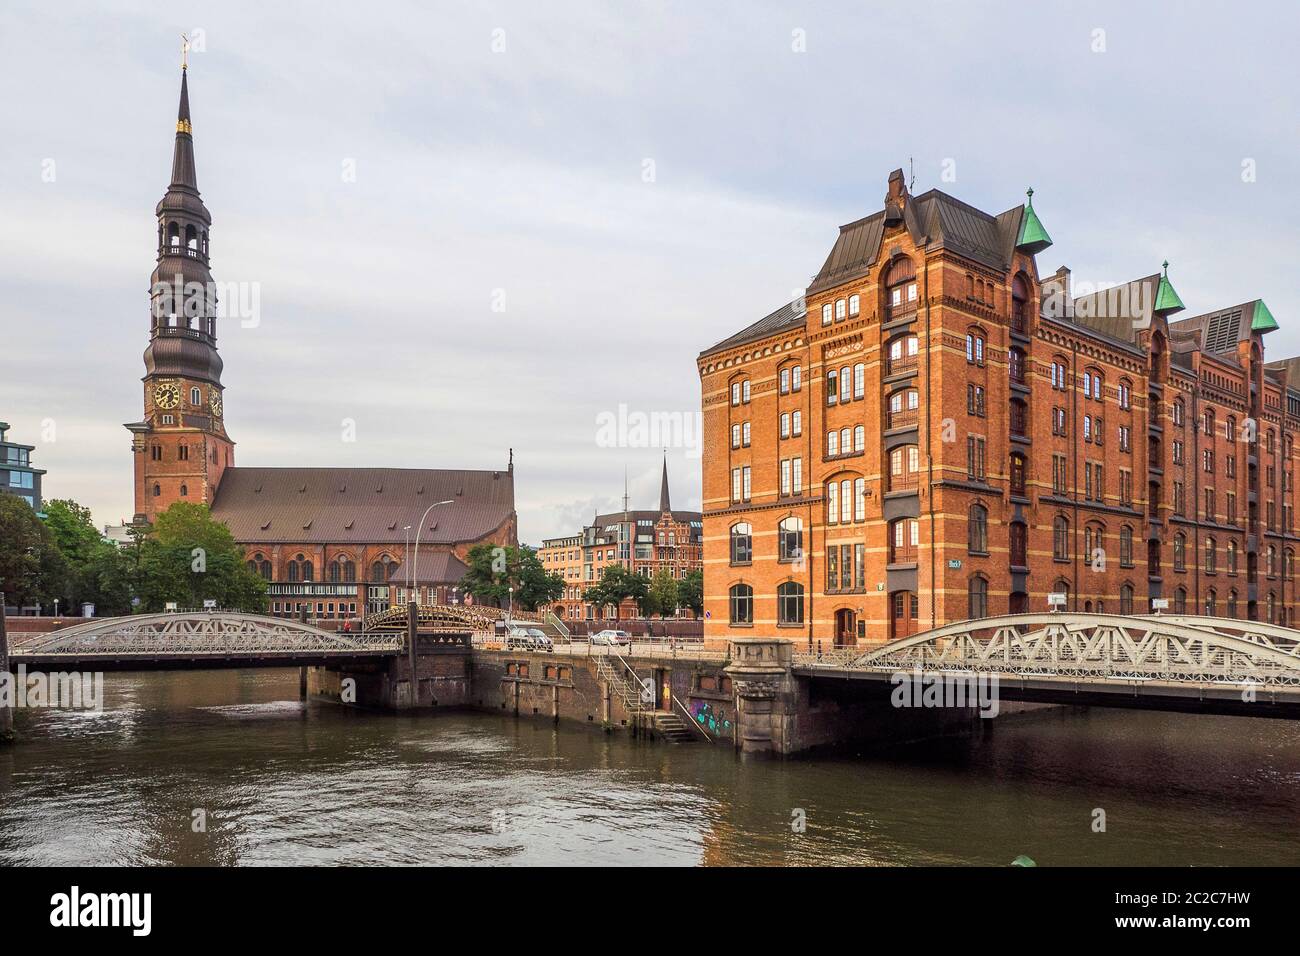 Germania, città anseatica libera di Amburgo - flotte nello Speicherstadt Foto Stock